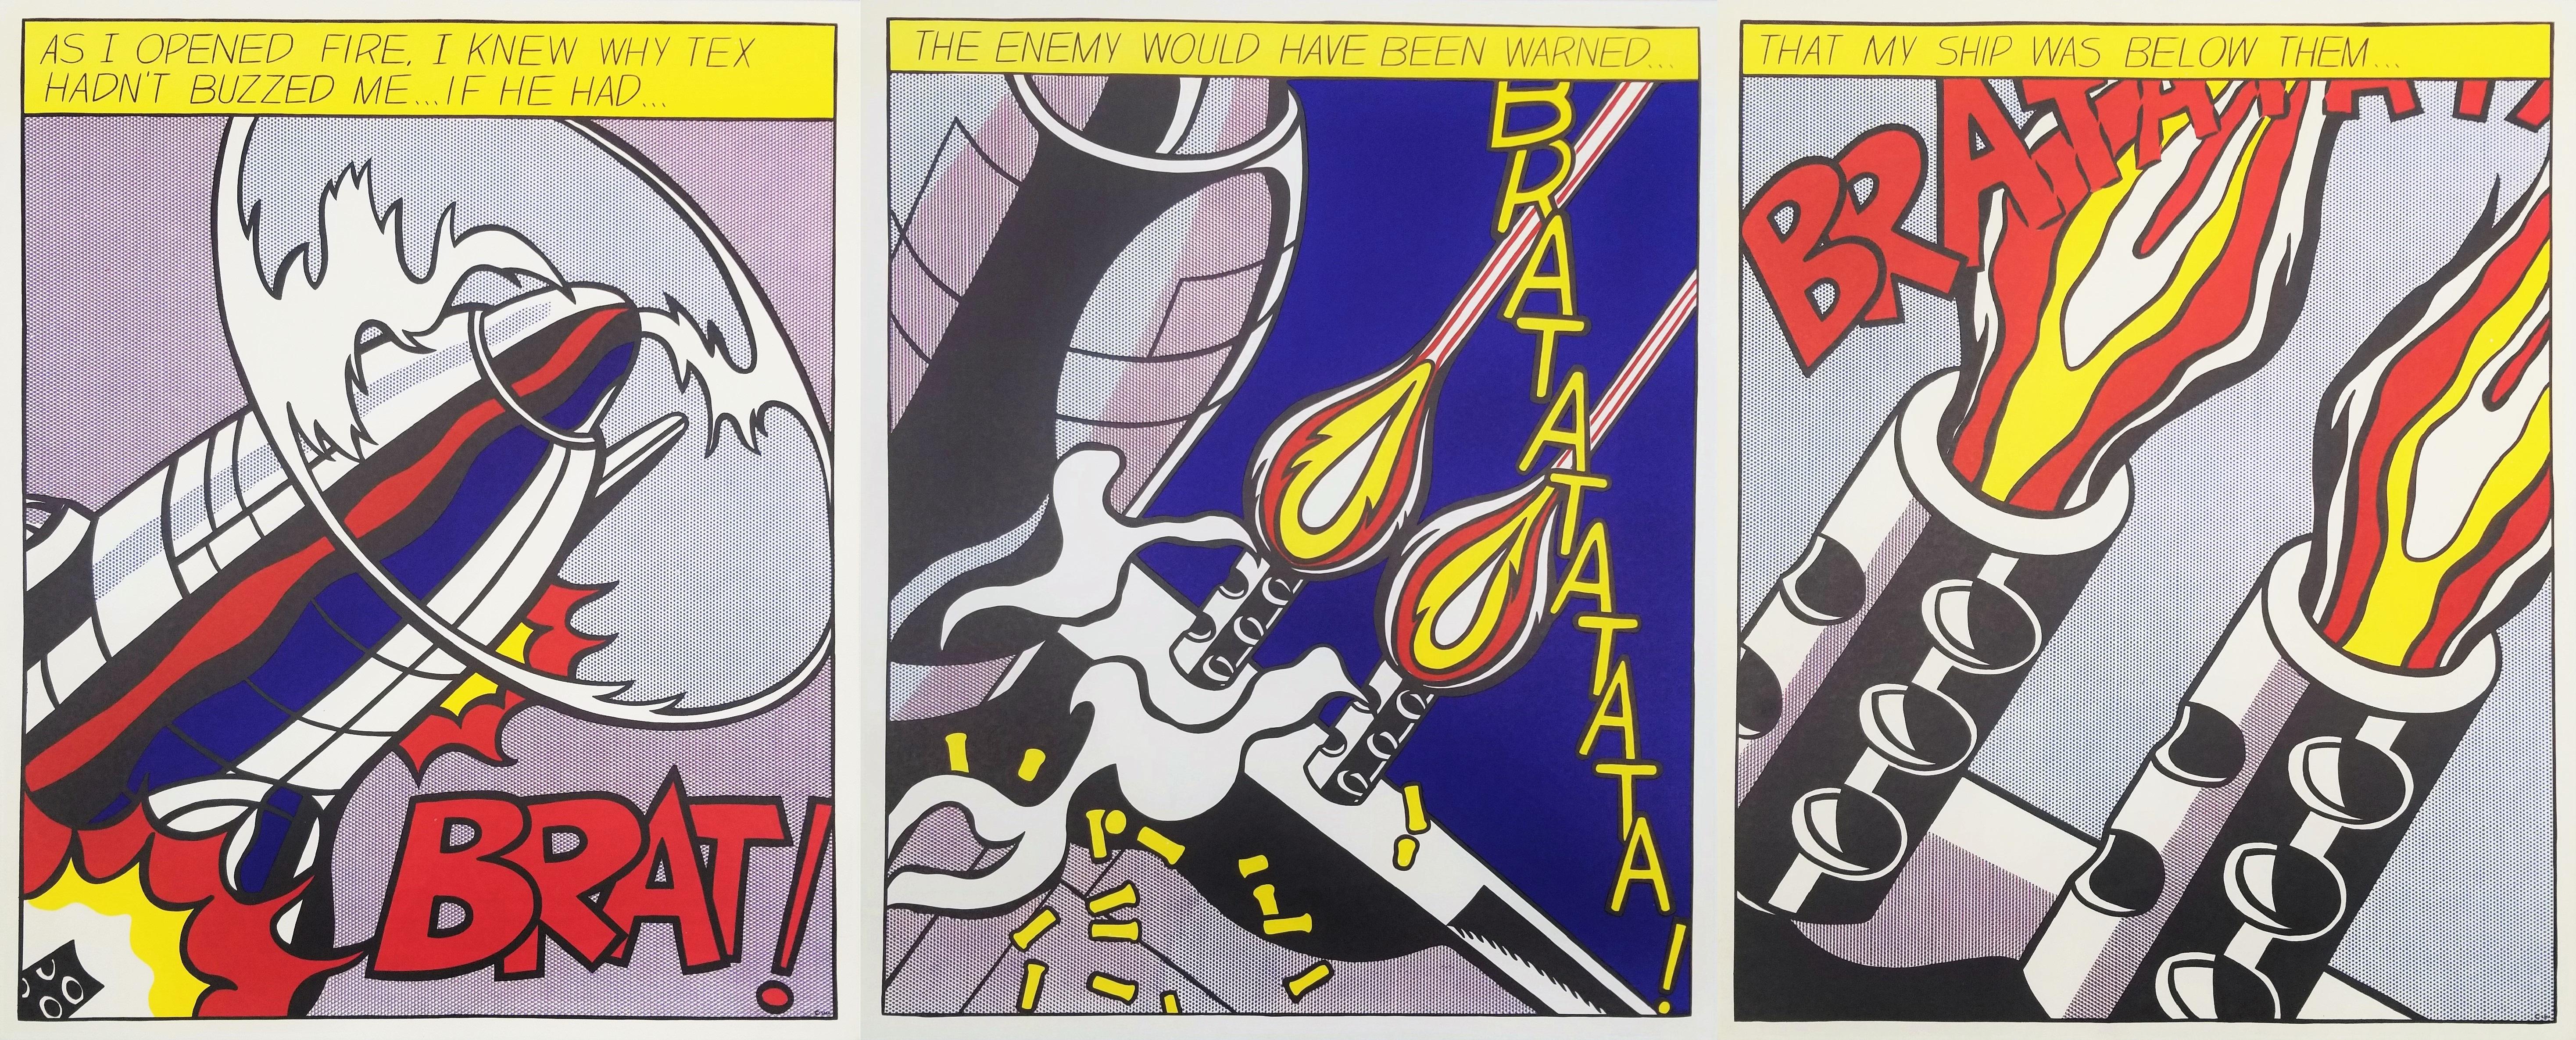 Artistics : (d'après) Roy Lichtenstein (Américain, 1923-1997)
Titre : "L'affiche "As I Opened Fire" (Triptyque) (Première édition)"
*Issued unsigned
Année : 1966 (première édition)
Supports : L'ensemble complet (triptyque) de trois lithographies